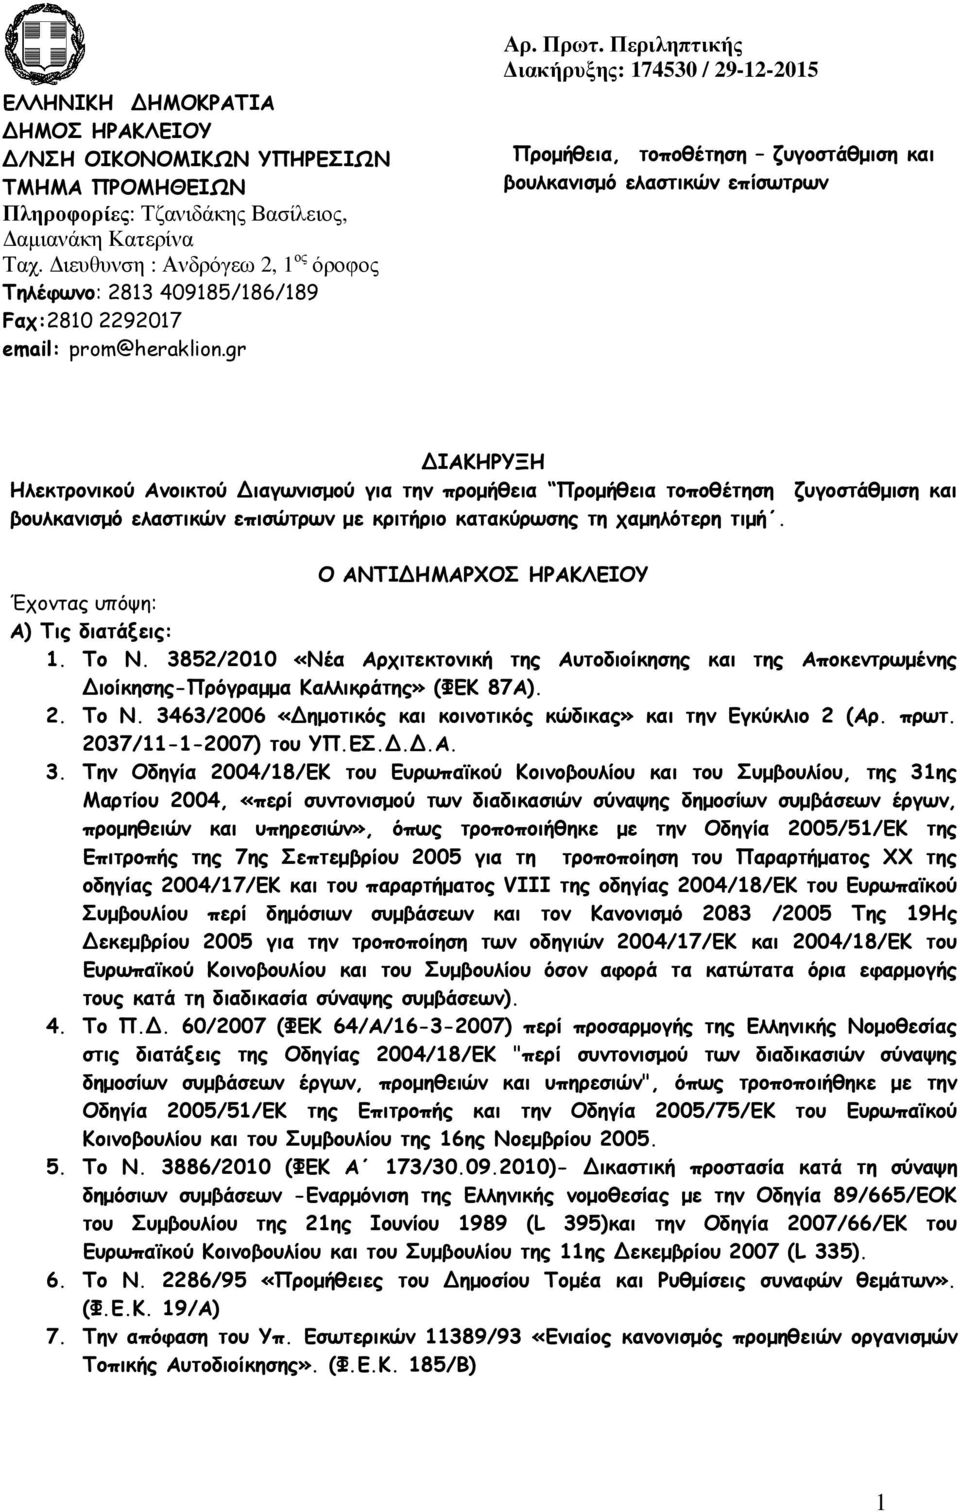 Περιληπτικής ιακήρυξης: 174530 / 29-12-2015 Προµήθεια, τοποθέτηση ζυγοστάθµιση και βουλκανισµό ελαστικών επίσωτρων ΙΑΚΗΡΥΞΗ Ηλεκτρονικού Ανοικτού ιαγωνισµού για την προµήθεια Προµήθεια τοποθέτηση